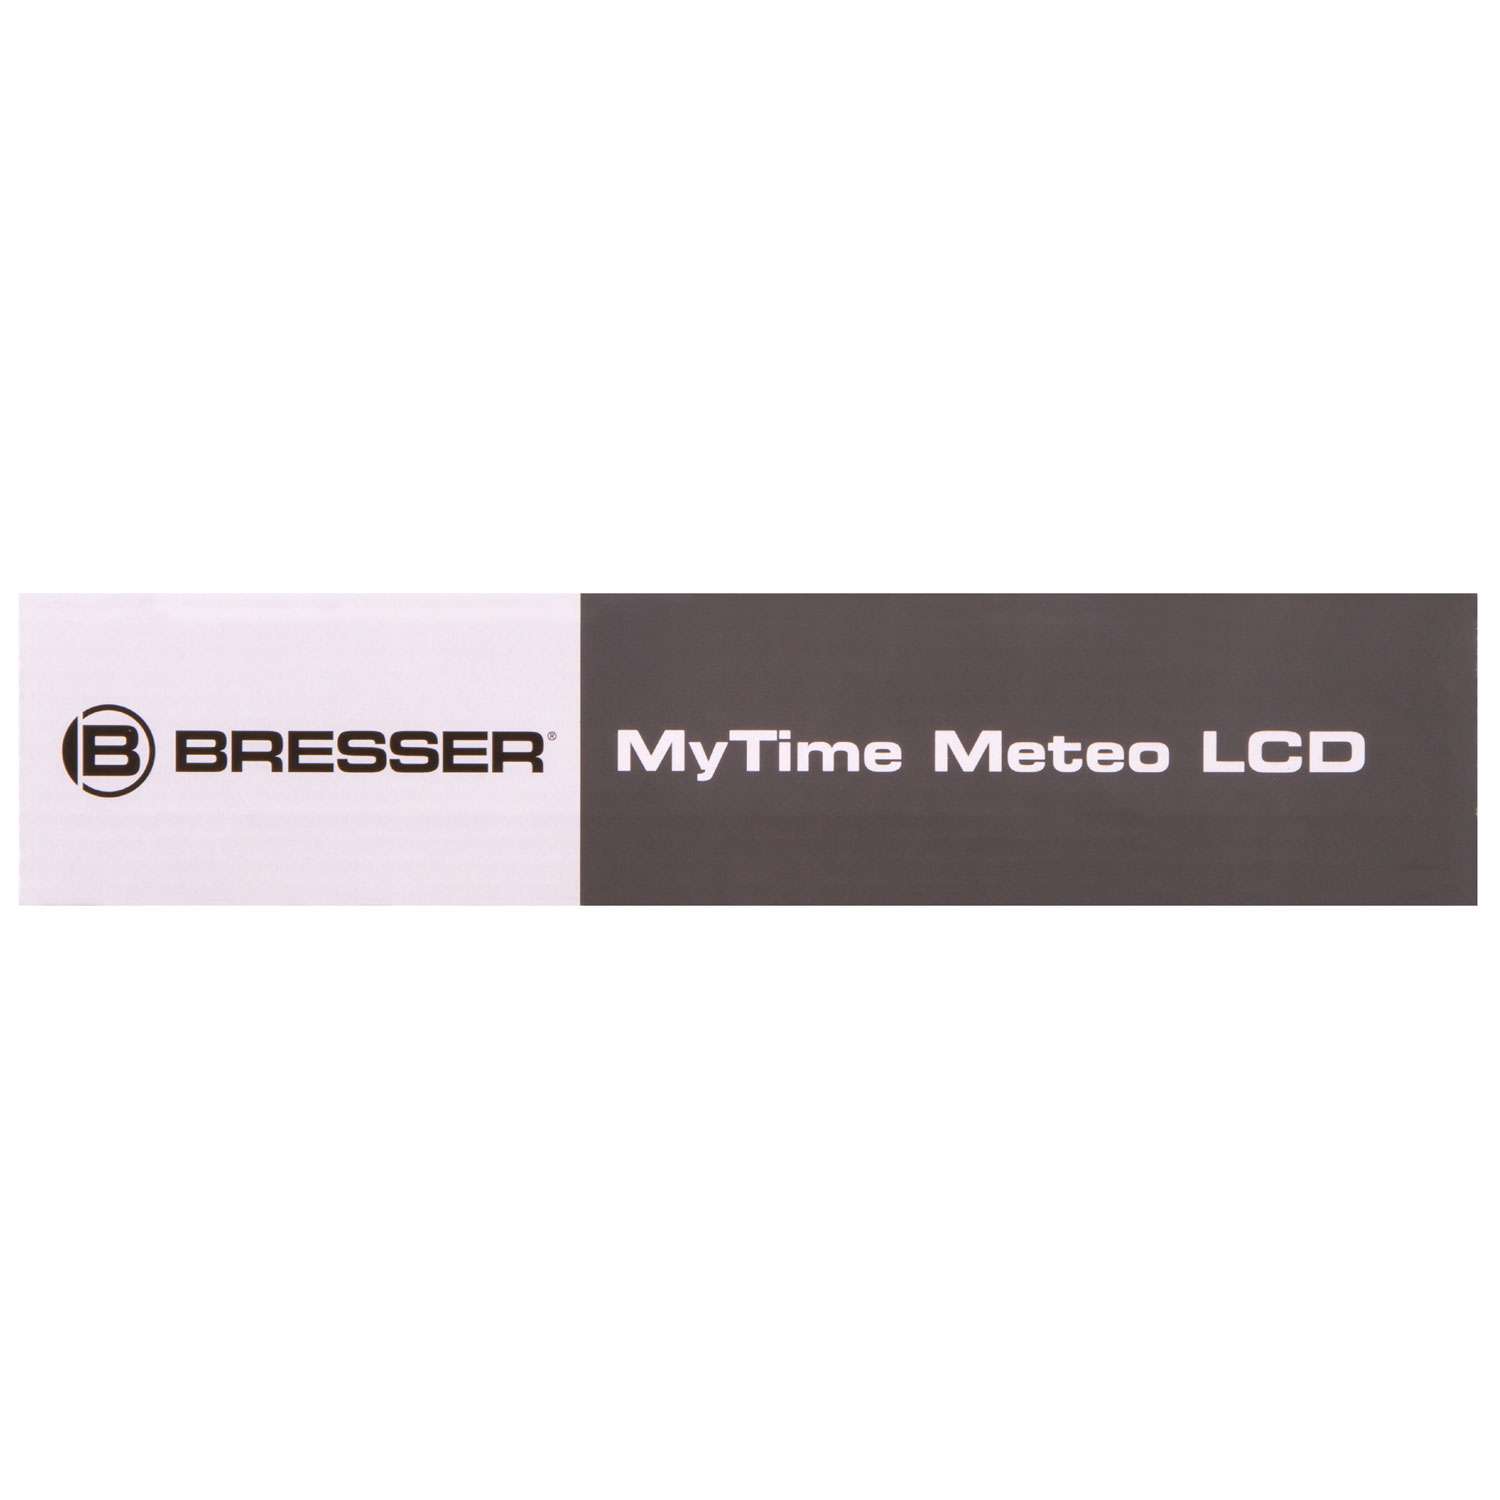 Часы настенные Bresser MyTime Meteotime LCD серебристые - фото 20